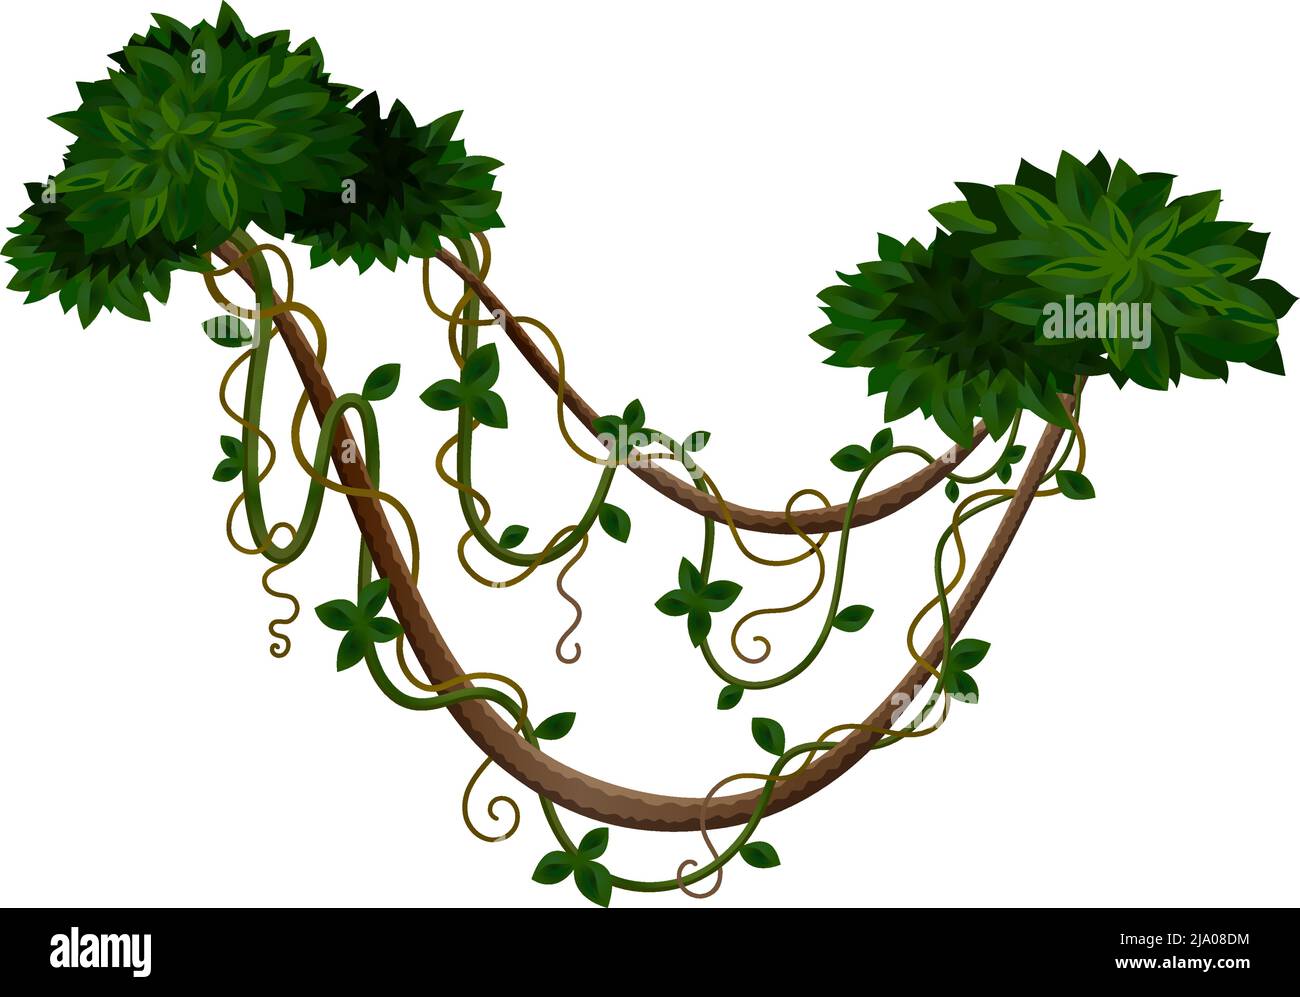 Tropische Dschungel Lianen Zusammensetzung mit zwei Büschen durch Lianen Stiele gebunden Vektor-Illustration Stock Vektor